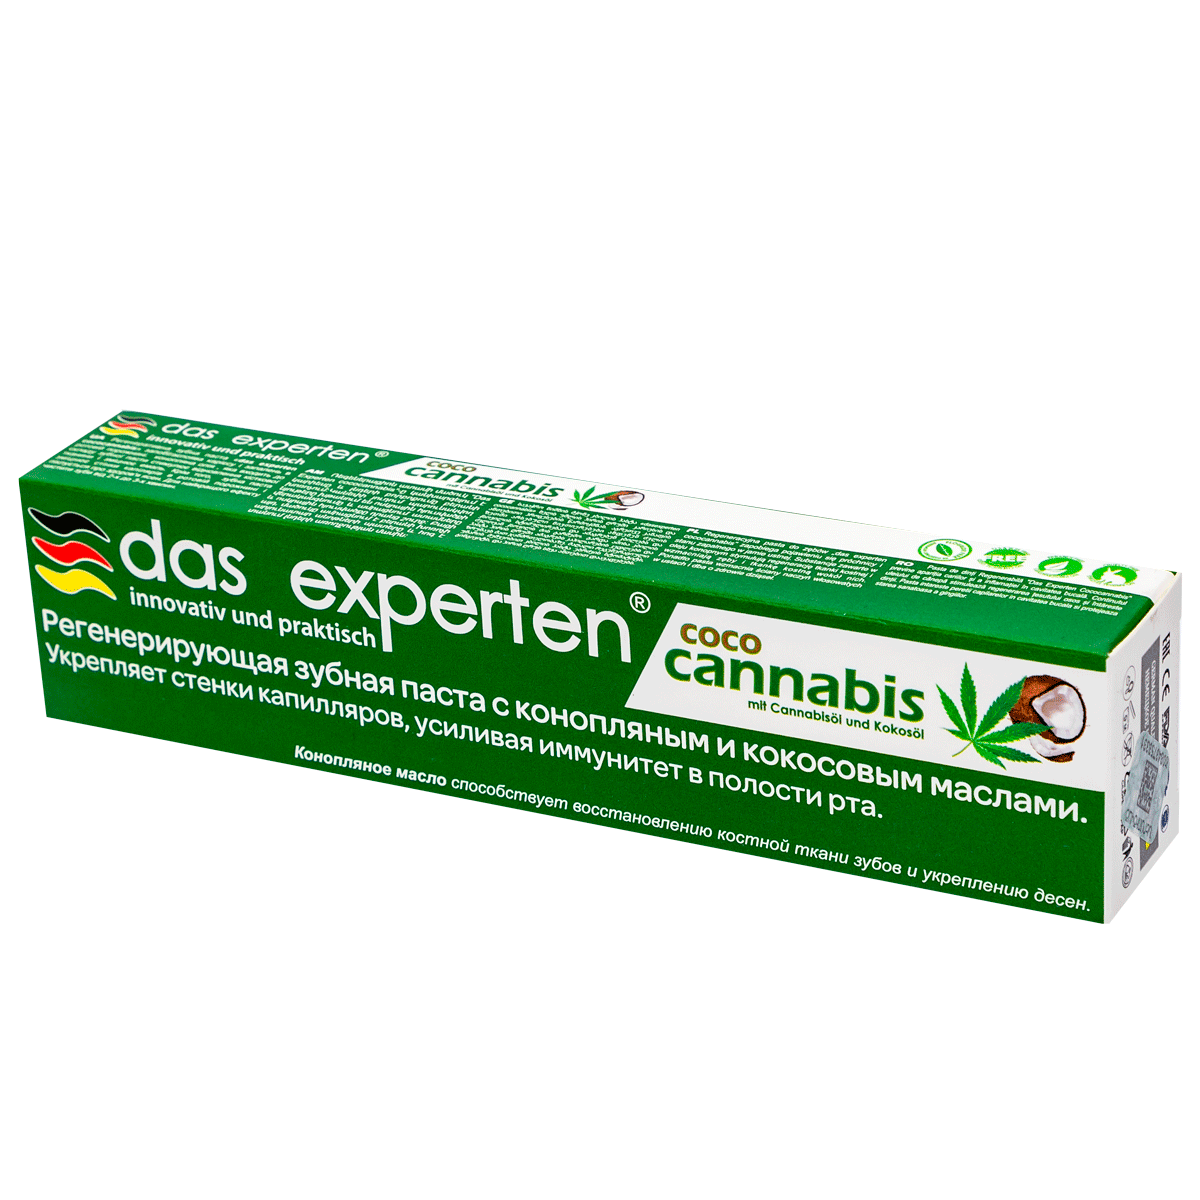 Ատամի մածուկ Das experten coco cannabis